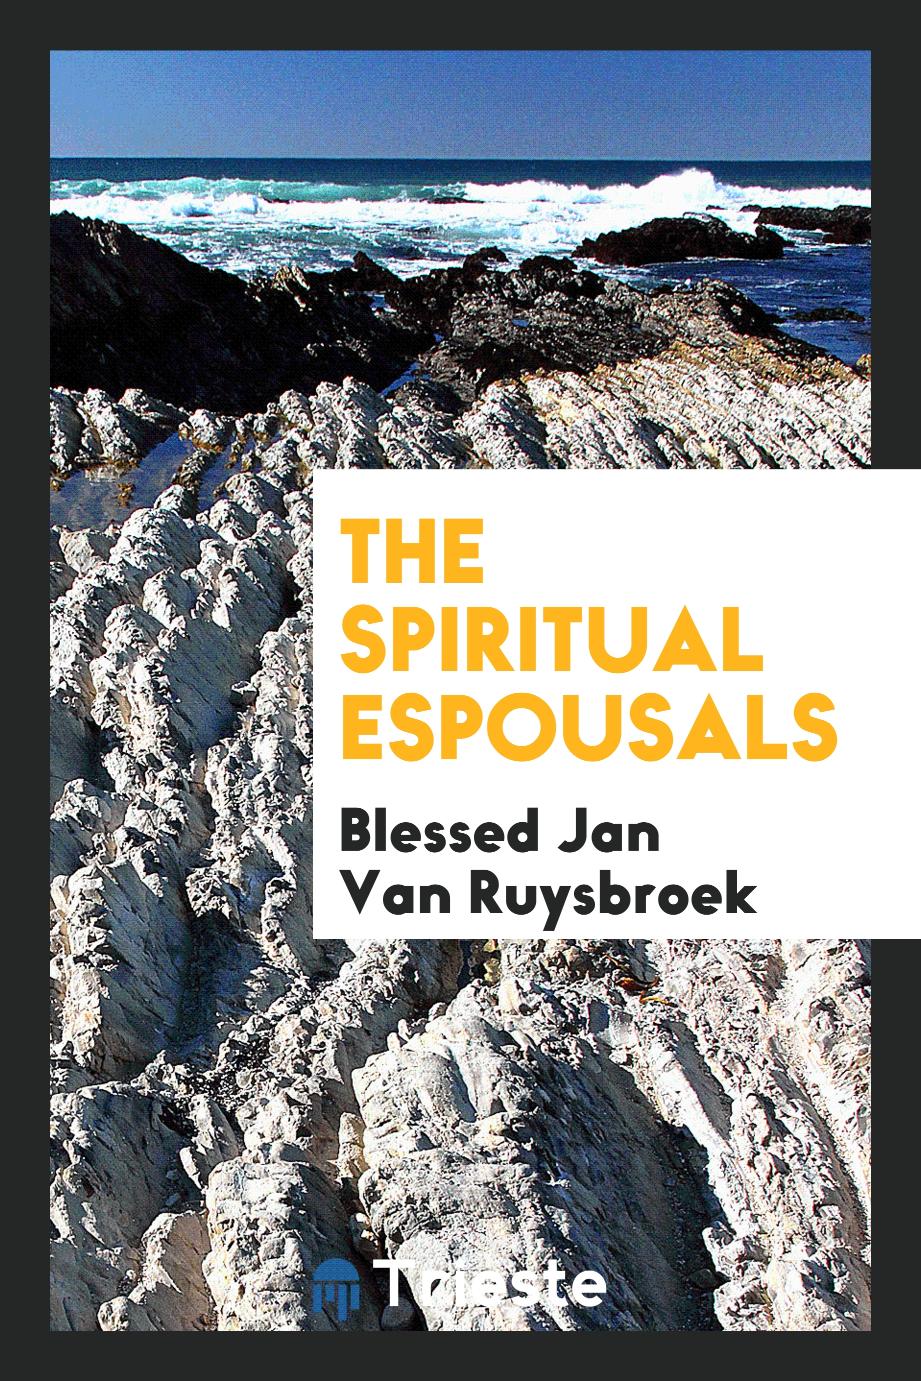 The spiritual espousals